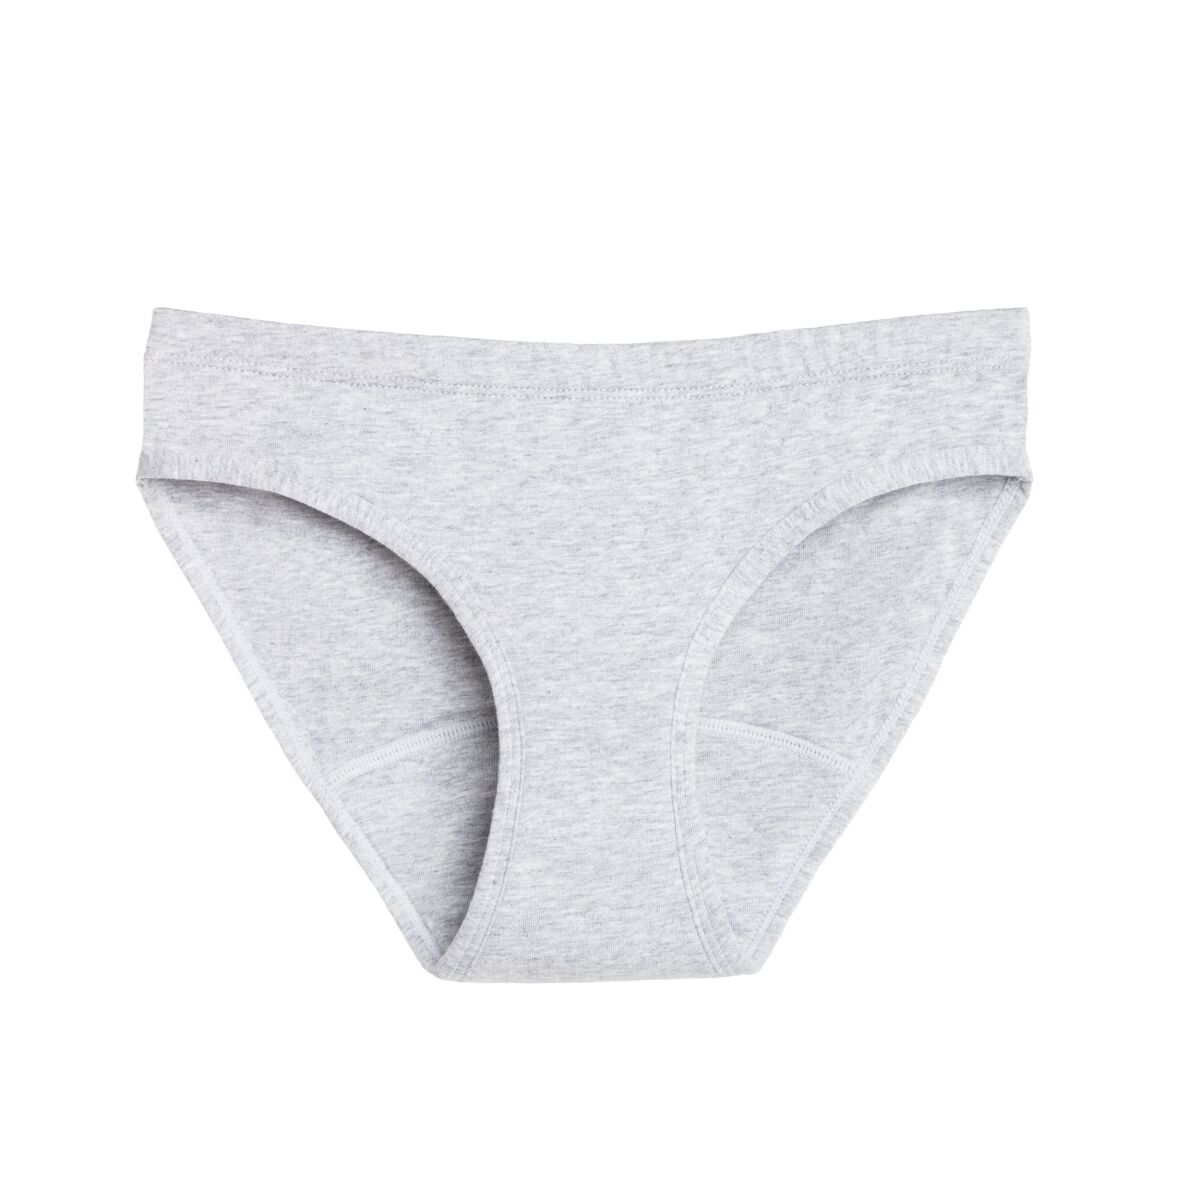 The Period Co.'s bikini style of organic cotton period underwear, in gray